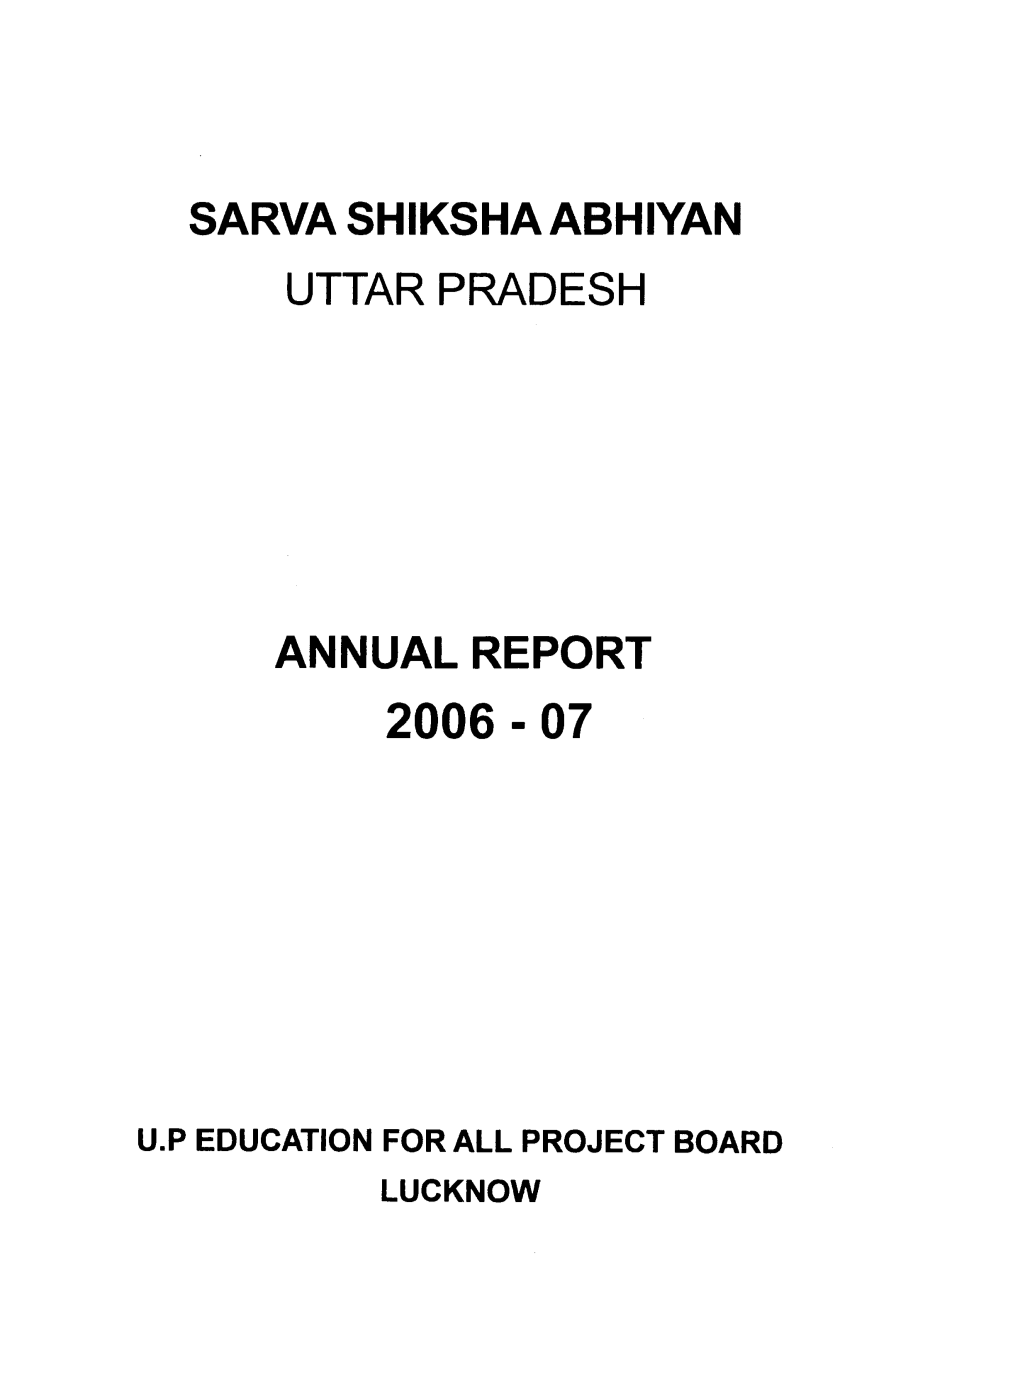 Sarva Shiksha Abhiyan Uttar Pradesh Annual Report